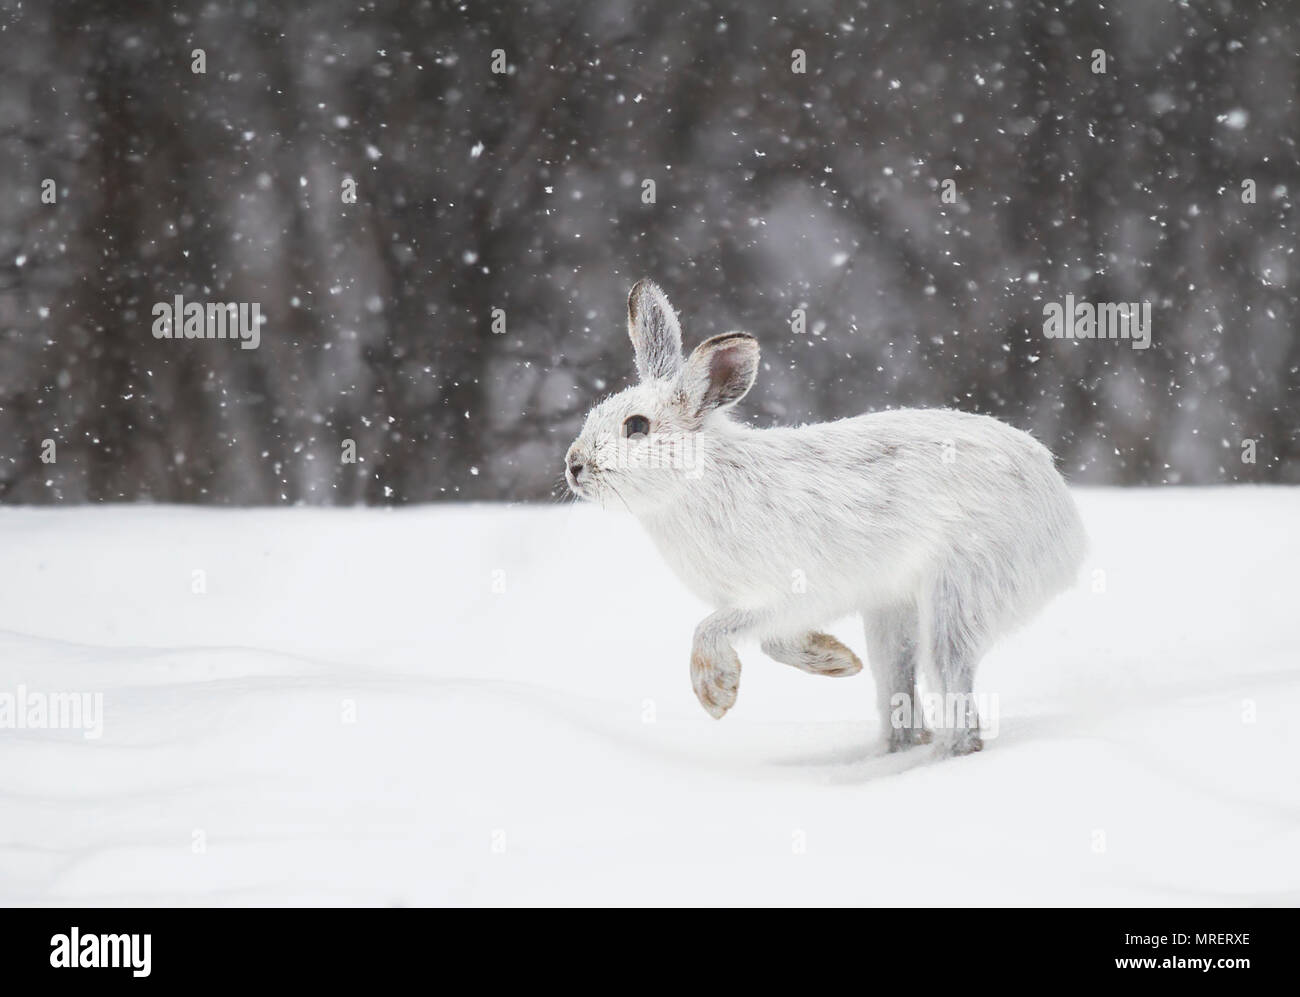 Le lièvre ou diverses espèces de lièvre (Lepus americanus) en marche dans la neige avec un manteau blanc en hiver au Canada Banque D'Images